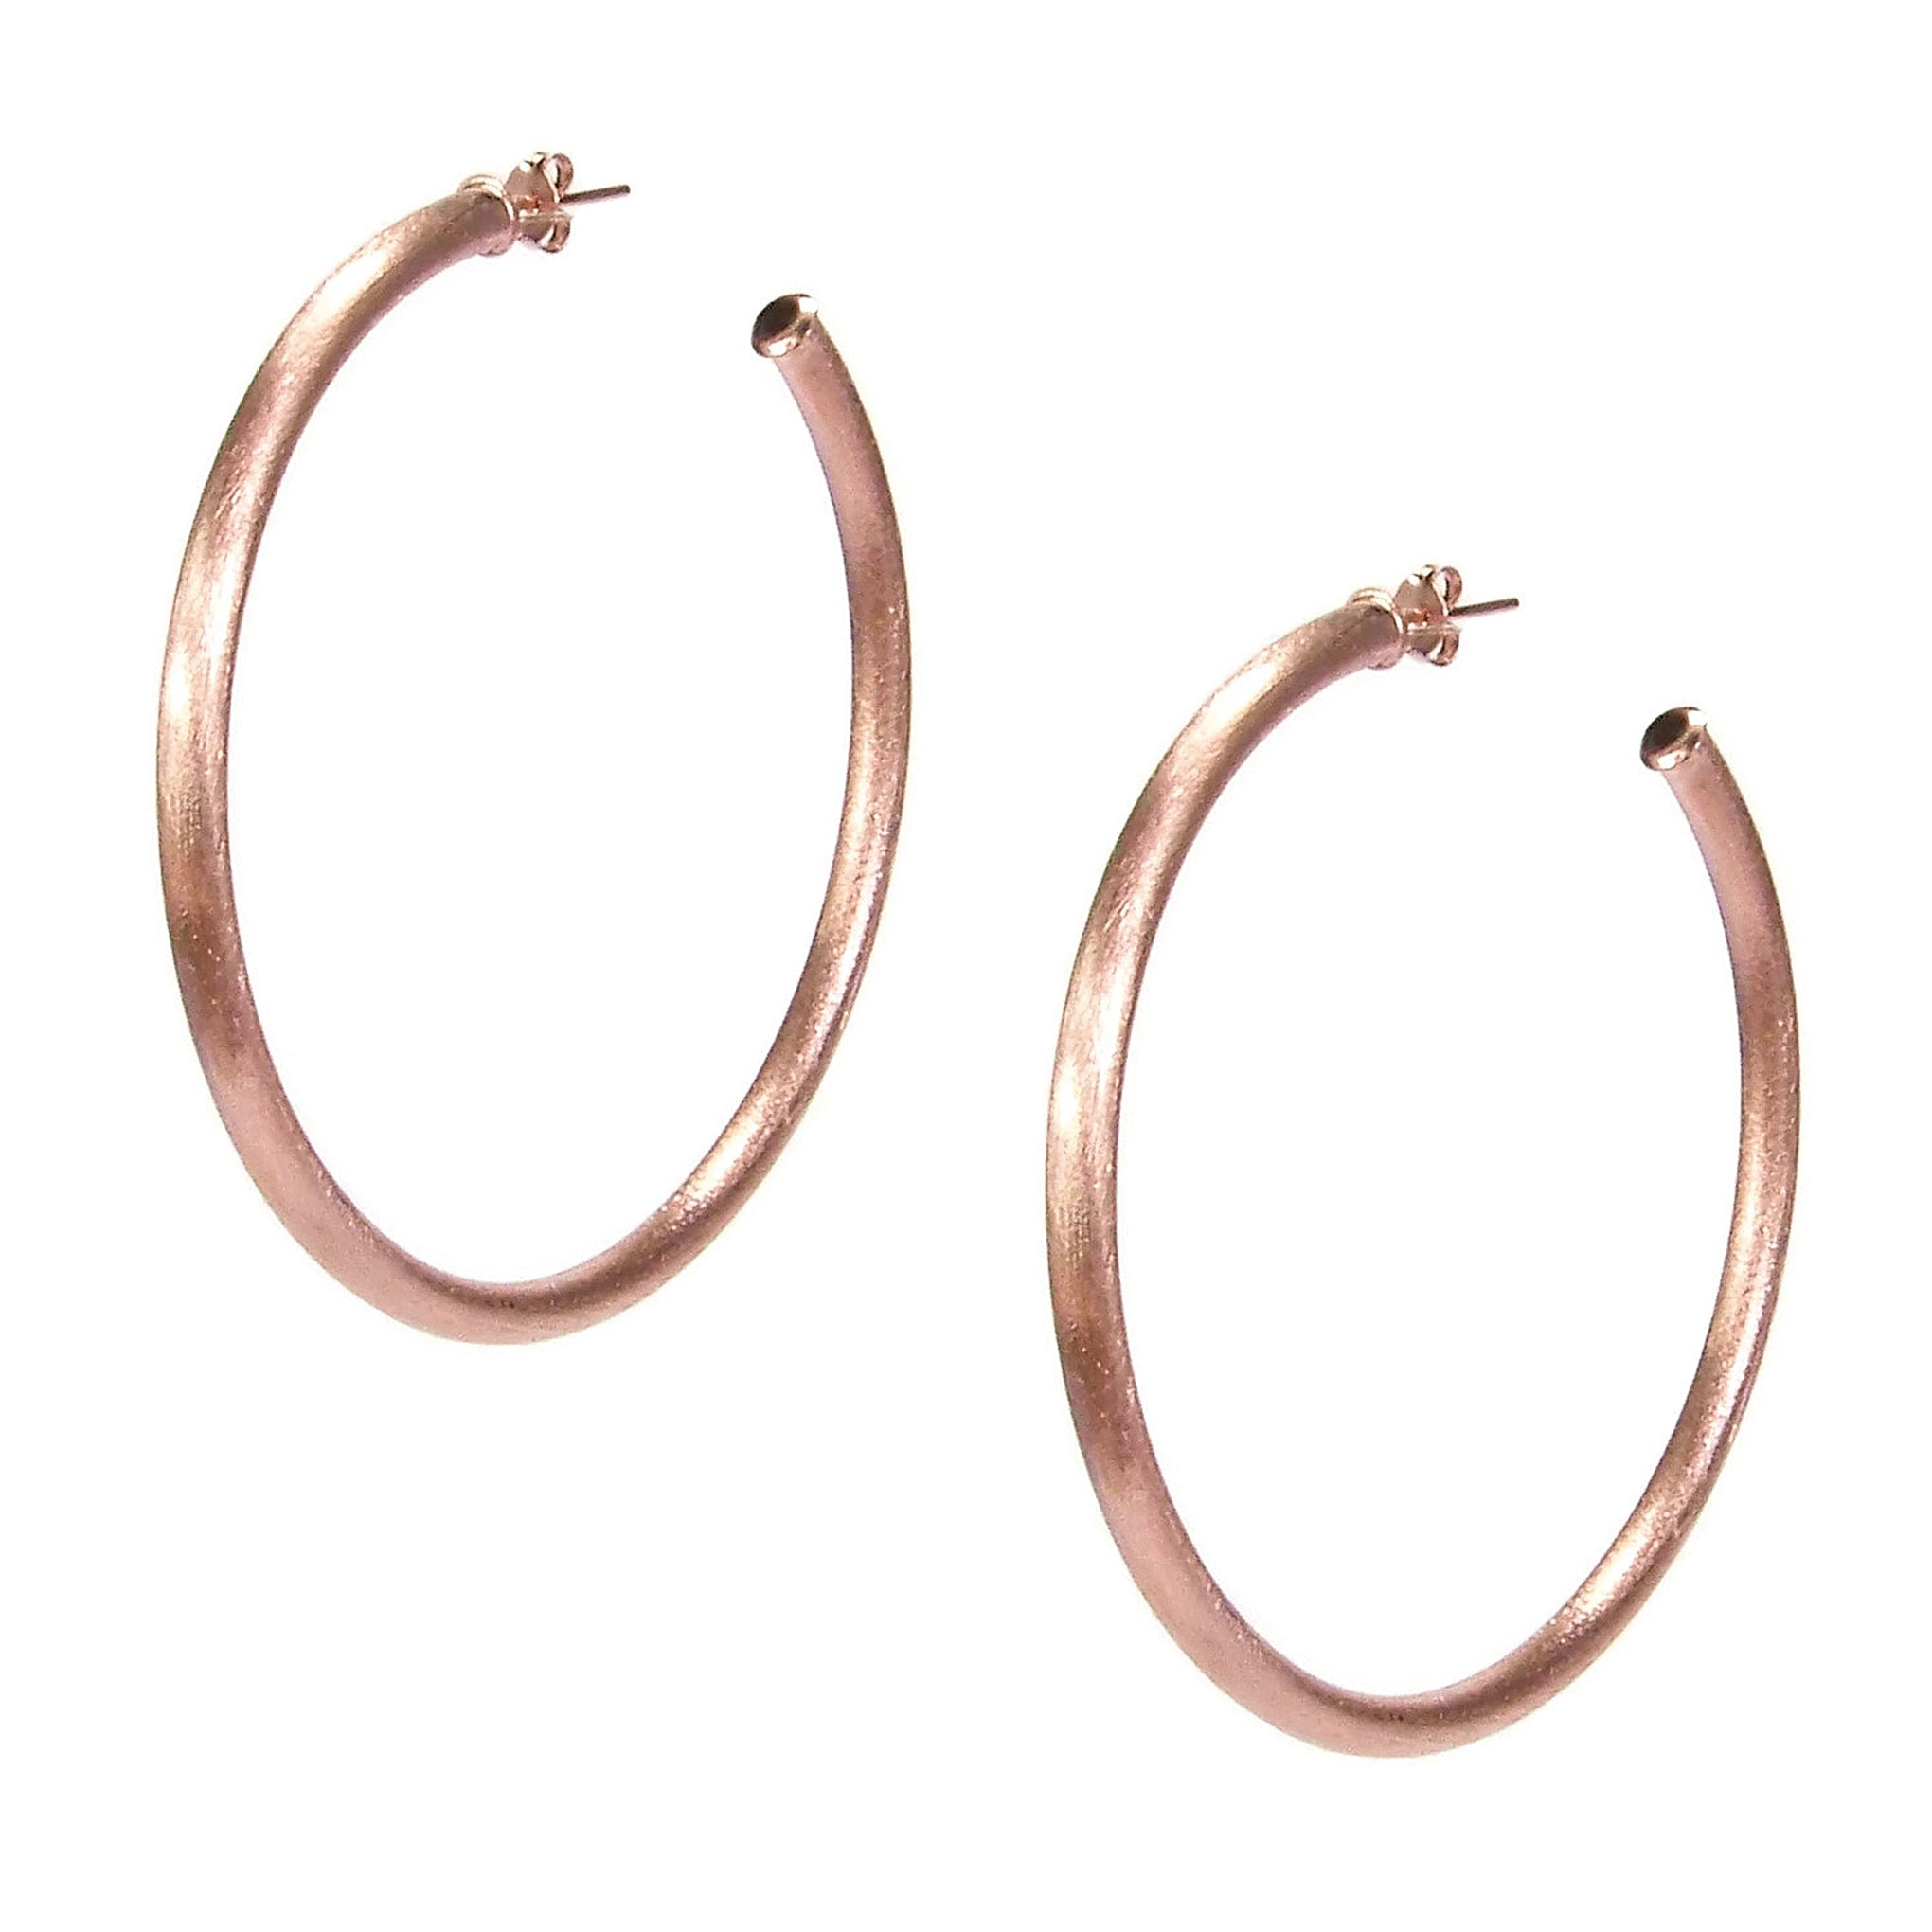 Sheila Fajl Liana Statement Tubular Hoop Earrings in Rose Gold